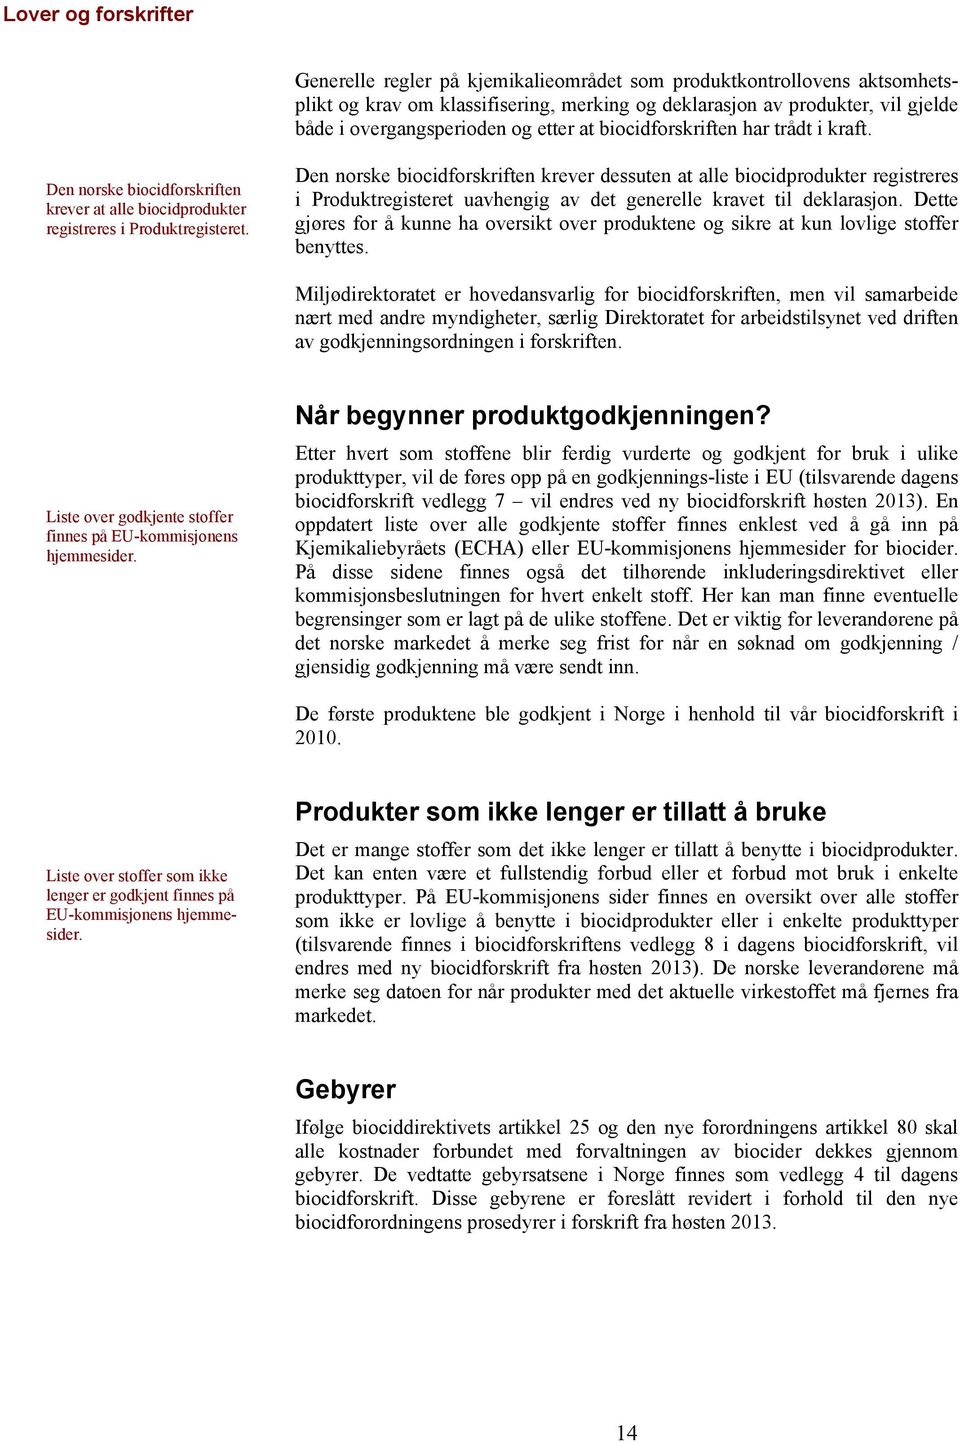 Den norske biocidforskriften krever dessuten at alle biocidprodukter registreres i Produktregisteret uavhengig av det generelle kravet til deklarasjon.